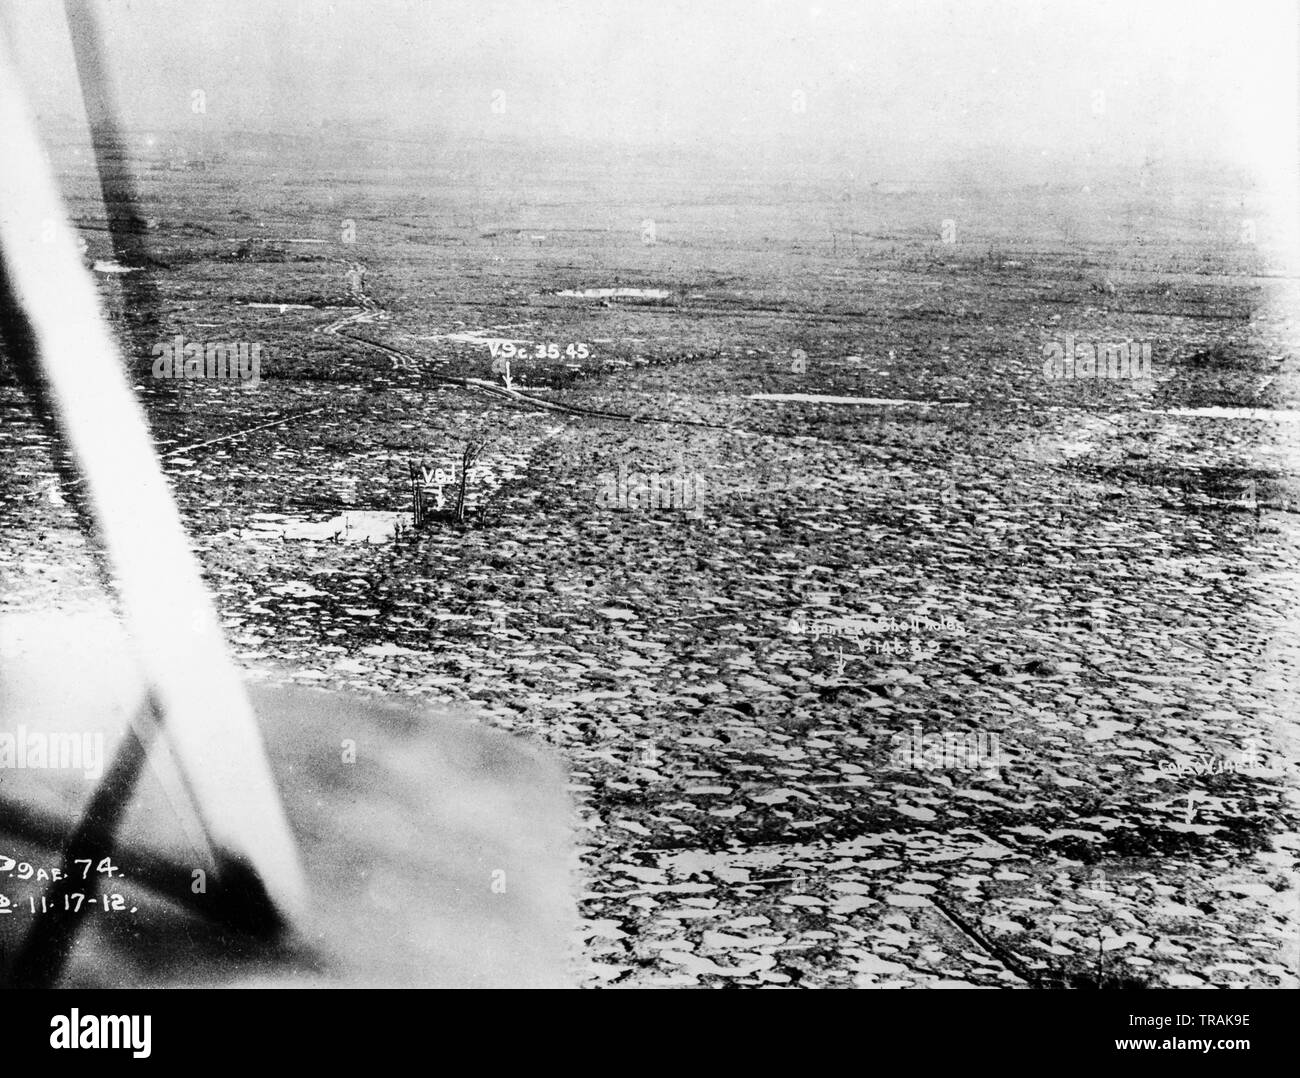 Ein Vintage schwarz und weiß Luftaufnahme im November 1917 getroffen, von der britischen Royal Air Force oder der Royal Flying Corps Flugzeuge. Foto zeigt ein Gebiet von Land durch Bomben zerstört; nur eine Vielzahl von Kratern. Es gibt drei Hand Notizen auf dem Foto geschrieben, darunter auf, die sagt, daß "Organisierte Shell Löcher'. Stockfoto